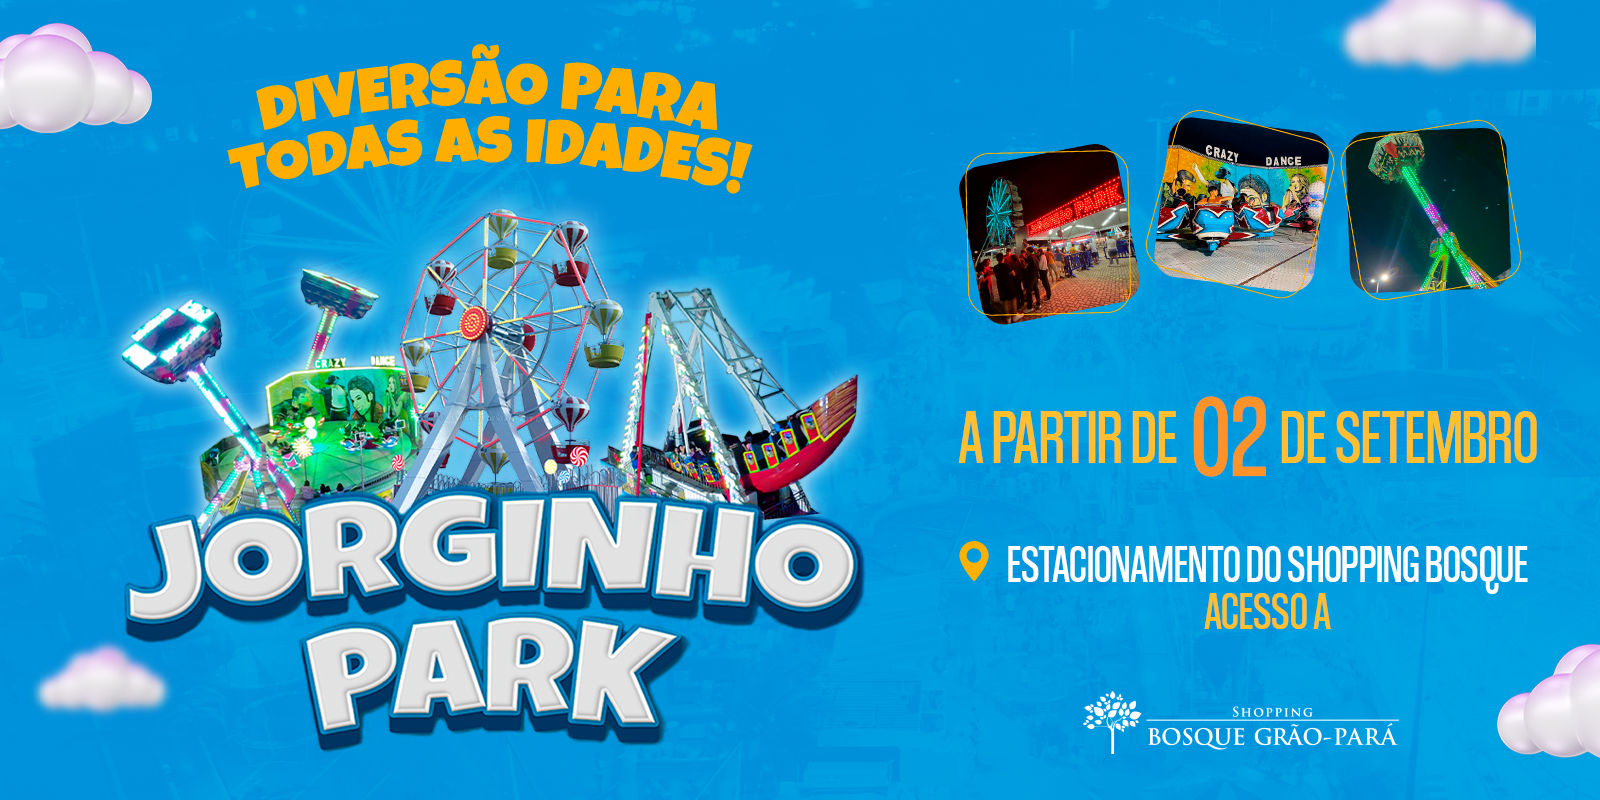 Shopping Bosque Grão-Pará - Play Games, a diversão está aqui